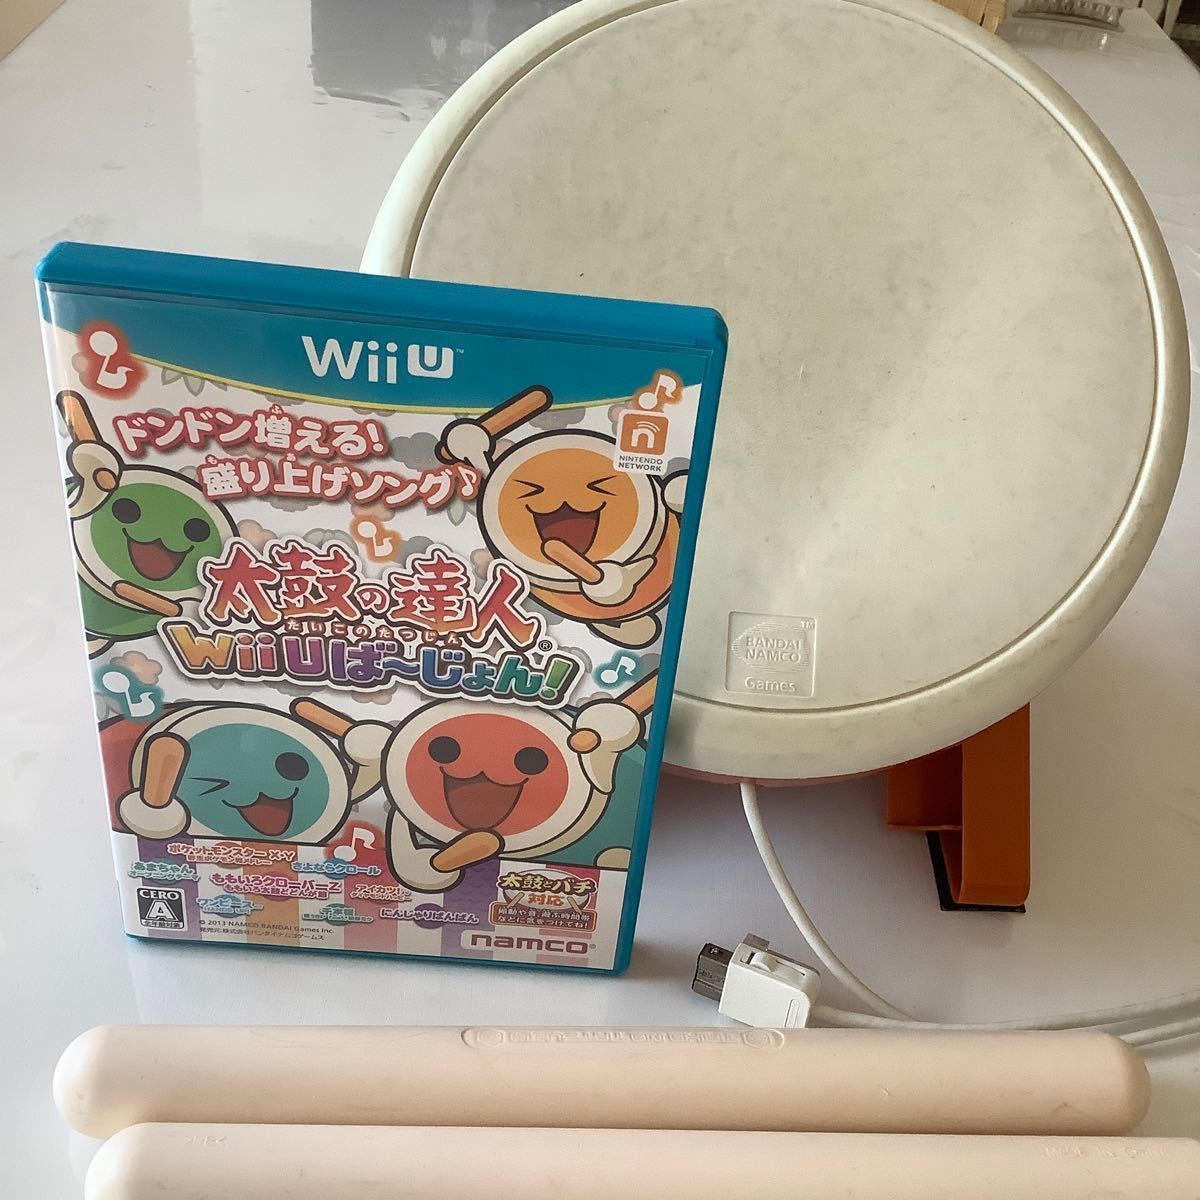 太鼓の達人Wii Uばじょん! ソフトと太鼓セット